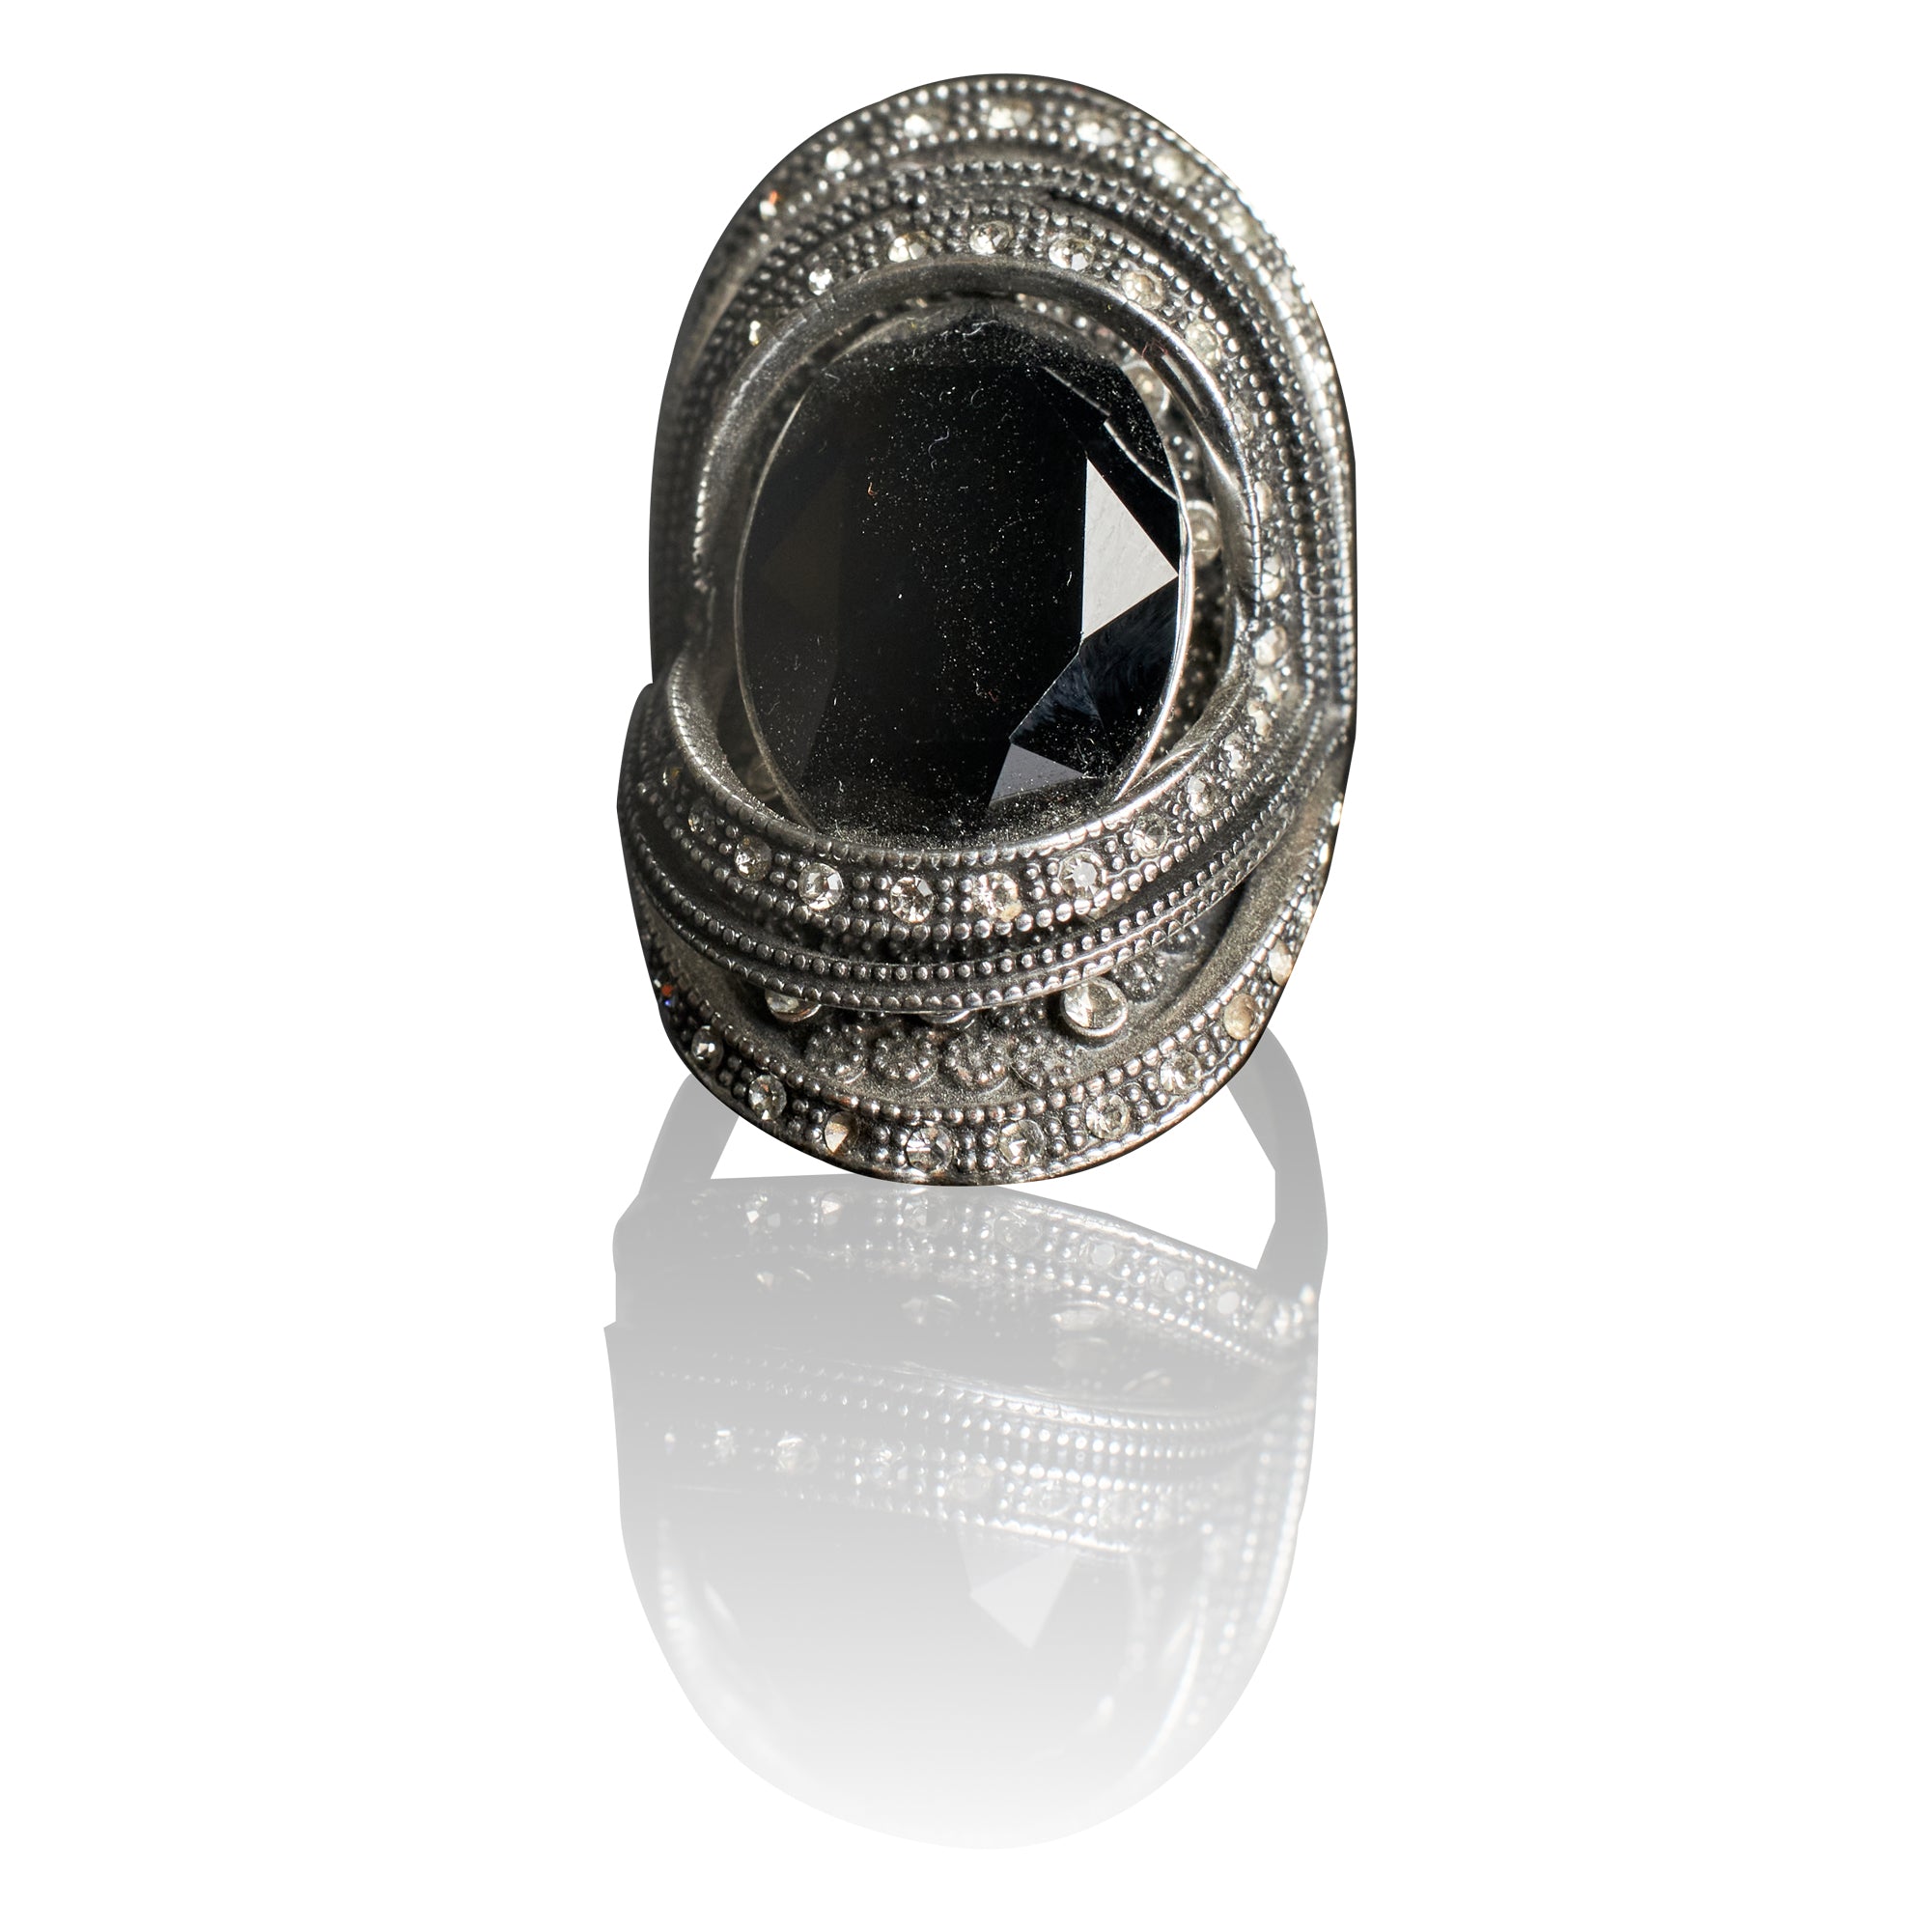 Antique Black Stone Ring